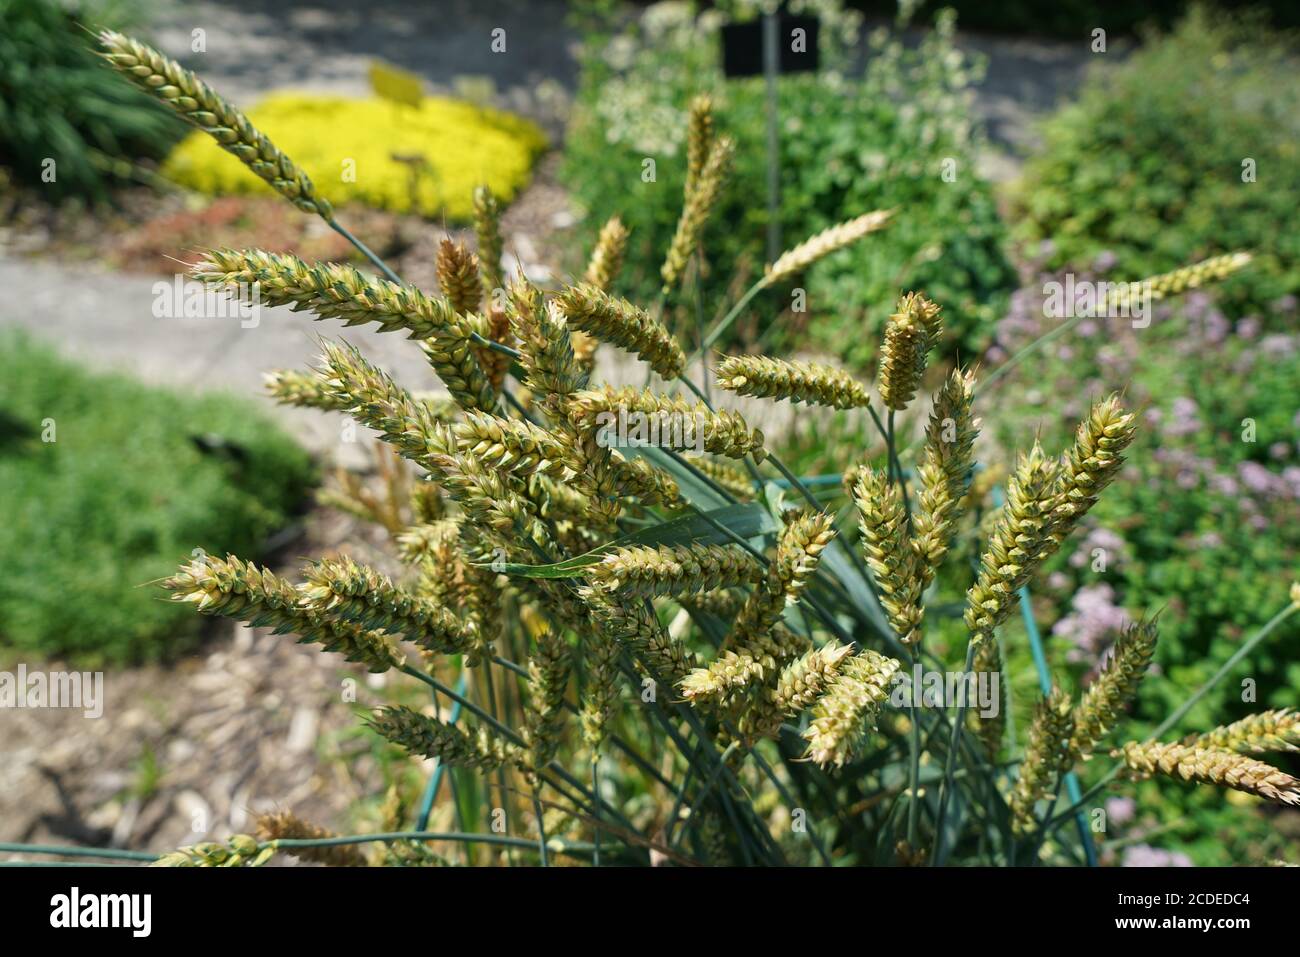 Closeup shot of Lolium temulentum plants Stock Photo